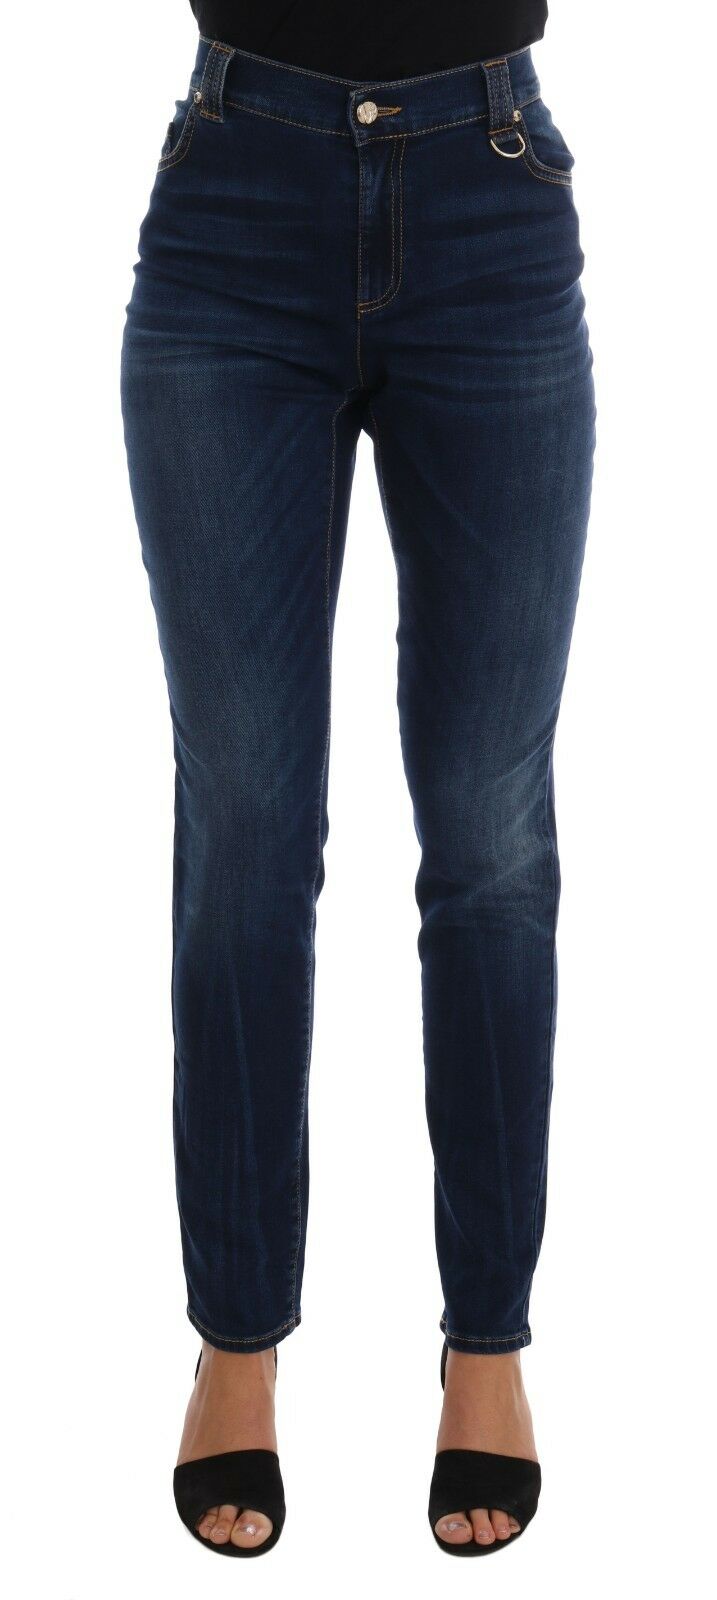 Blue Wash Cotton Stretch Slim Denim Jeans Pant - Avaz Shop